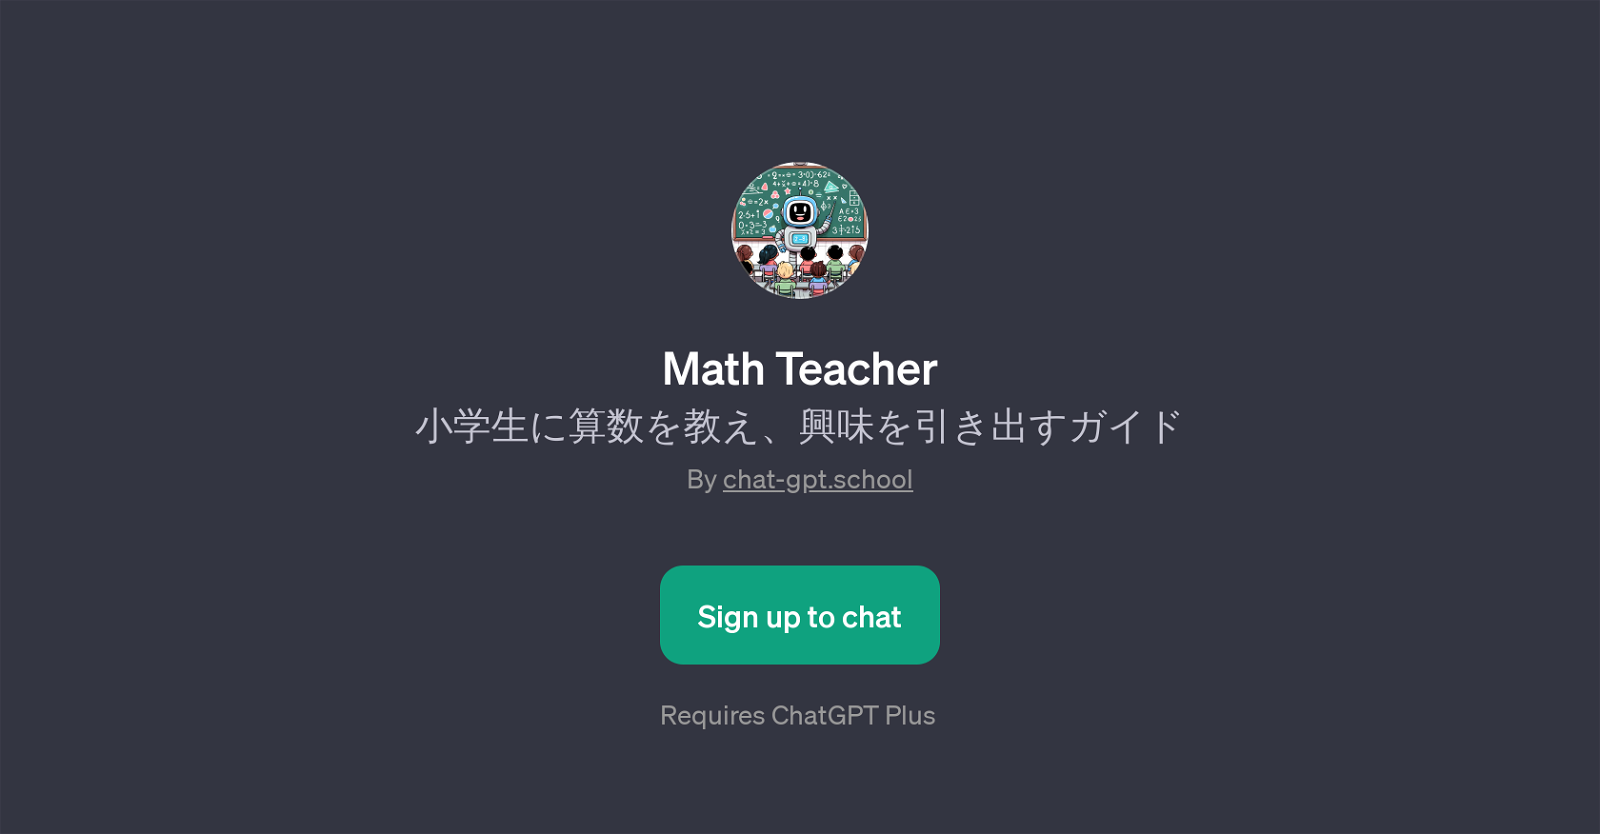 Math Teacher website